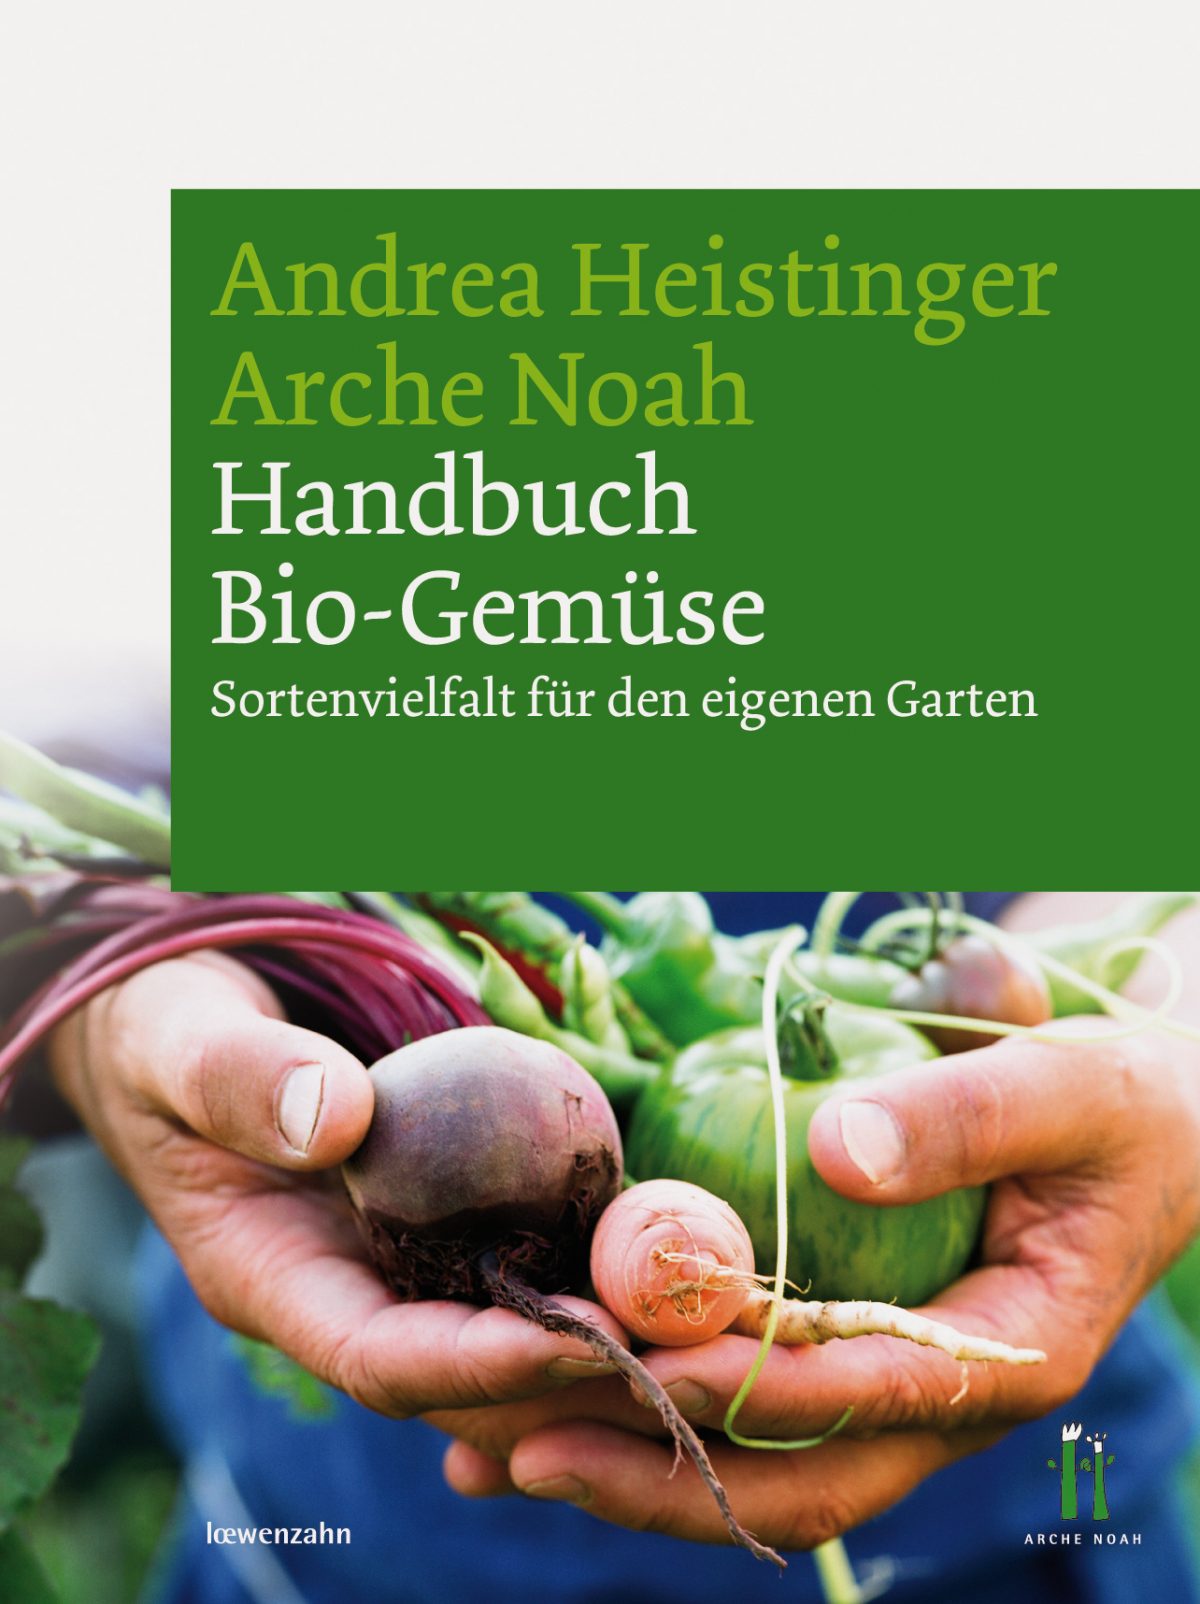 "Handbuch Bio-Gemüse"